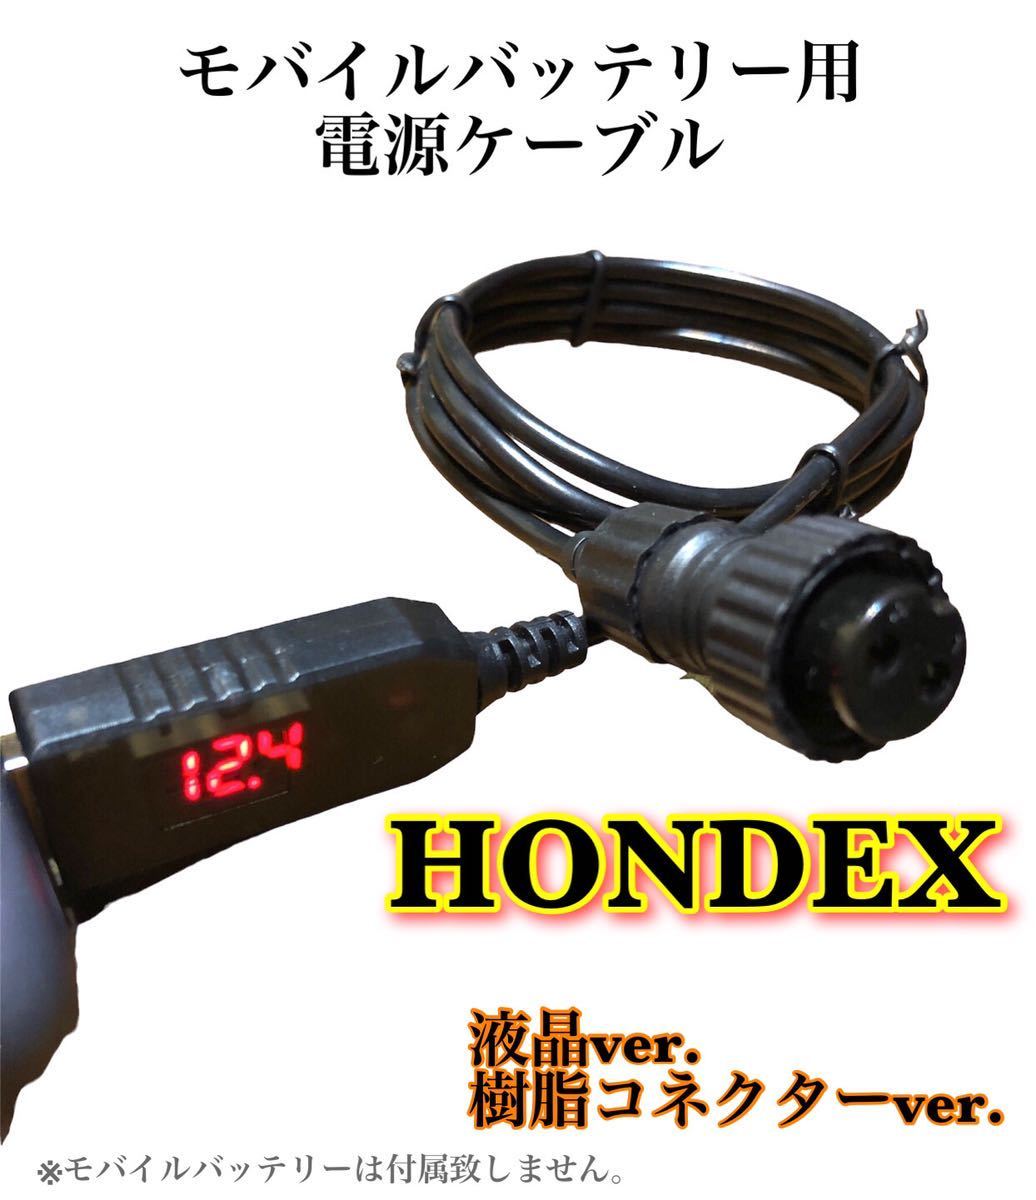 ホンデックス(HONDEX)製魚探をモバイルバッテリーで動かす為の電源ケーブル(モニター5型未満)｜売買されたオークション情報、ヤフオク!  の商品情報をアーカイブ公開